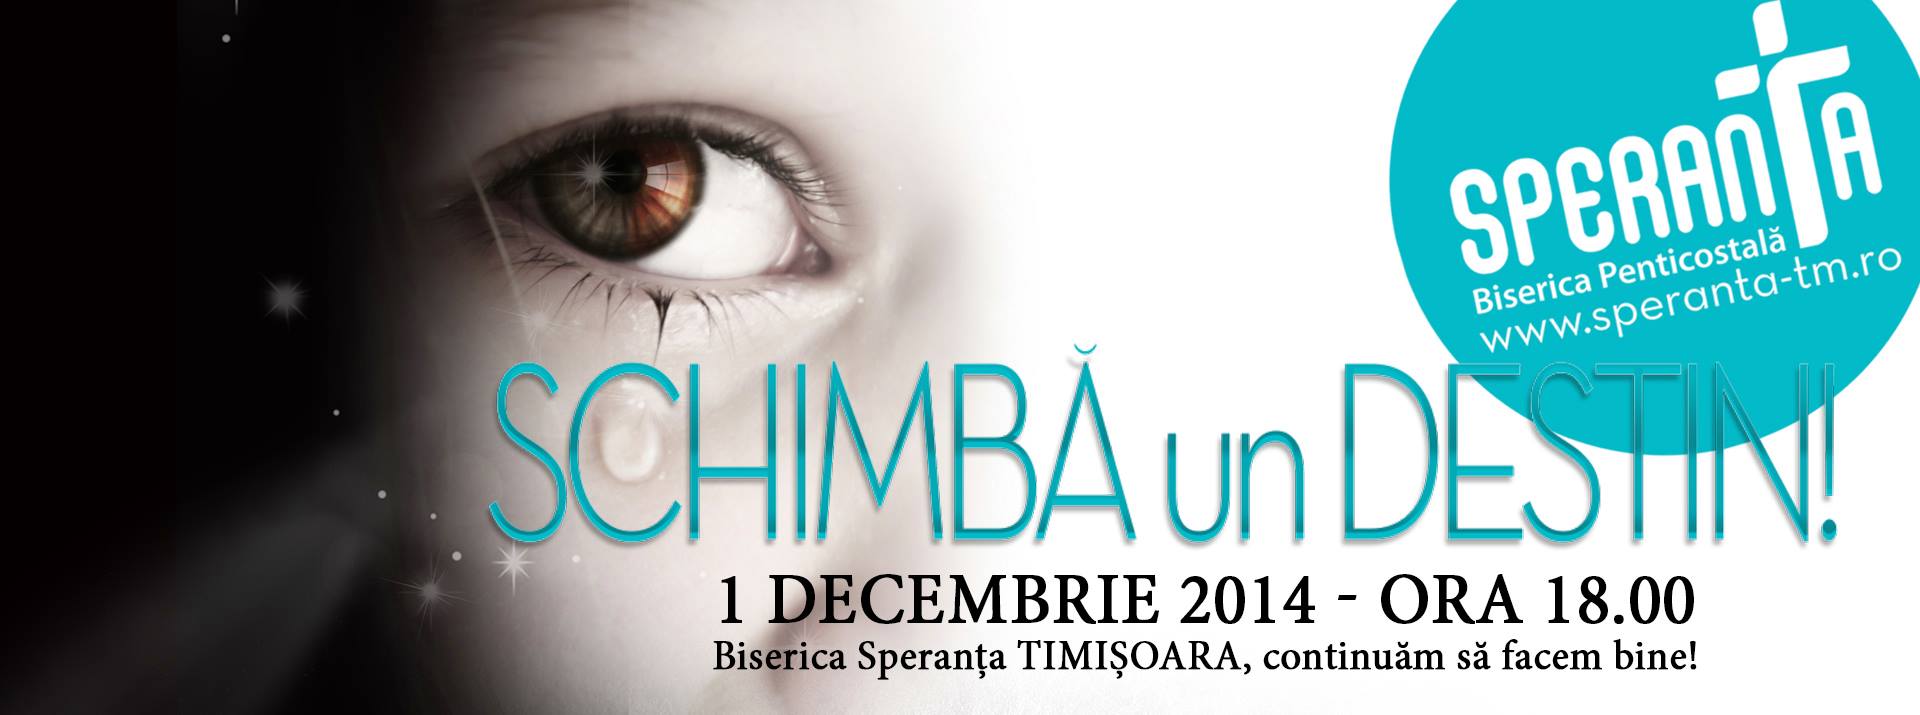 Schimbă un destin - 1 decembrie 2014 - Timișoara